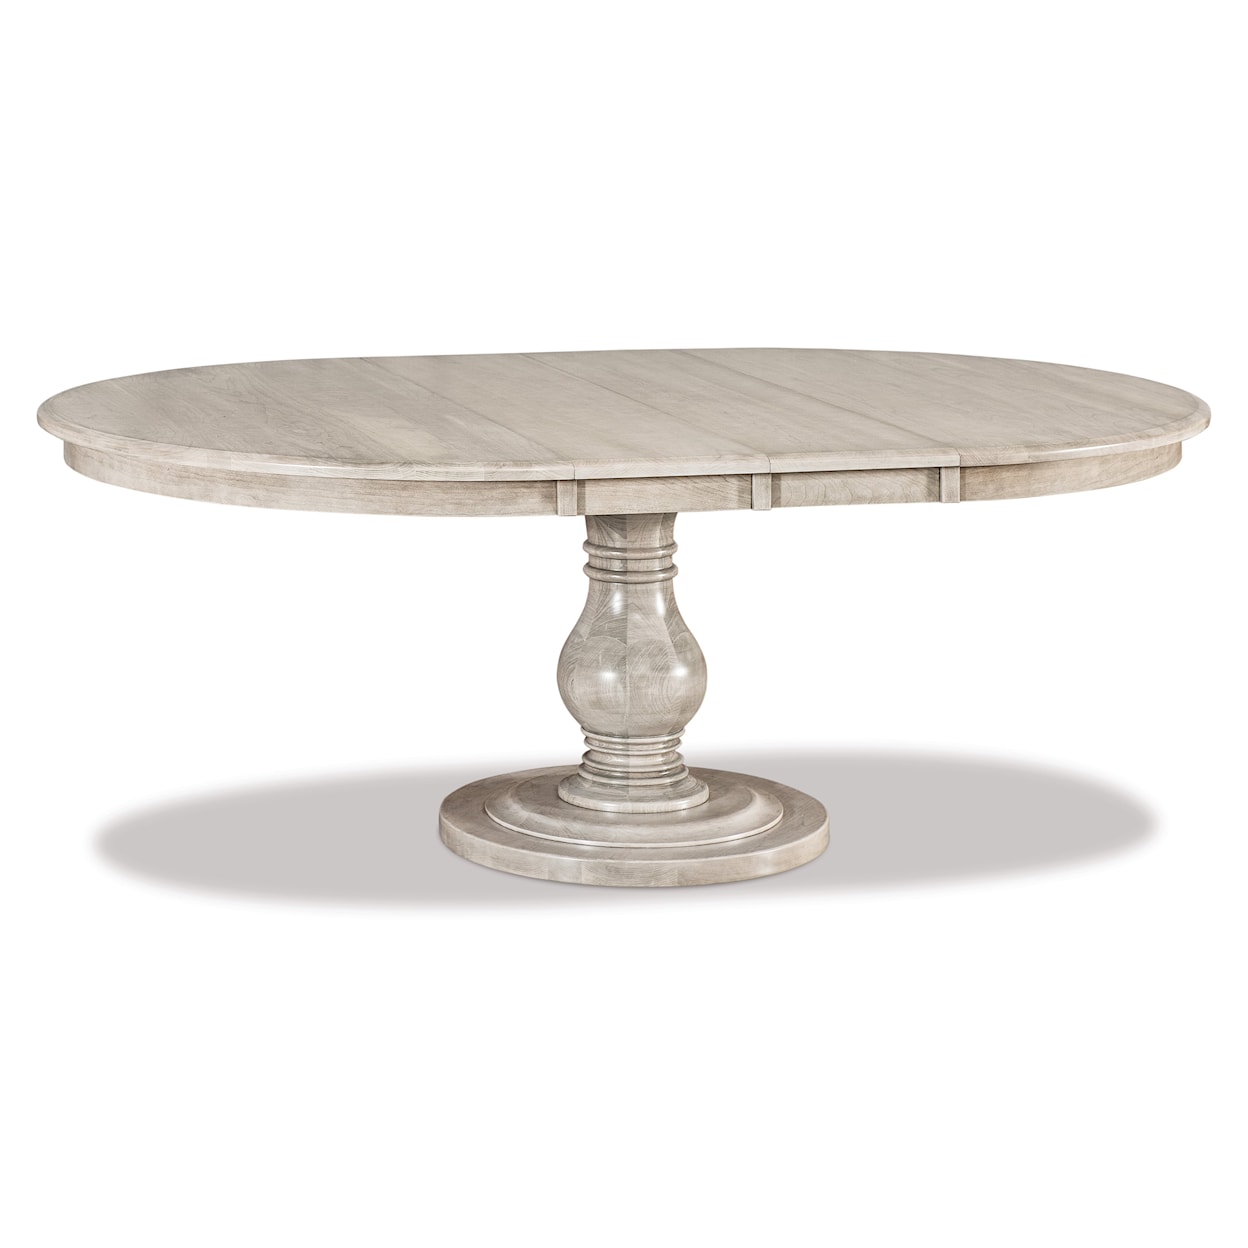 Archbold Furniture Bob Timberlake Round Pedestal Dining Table